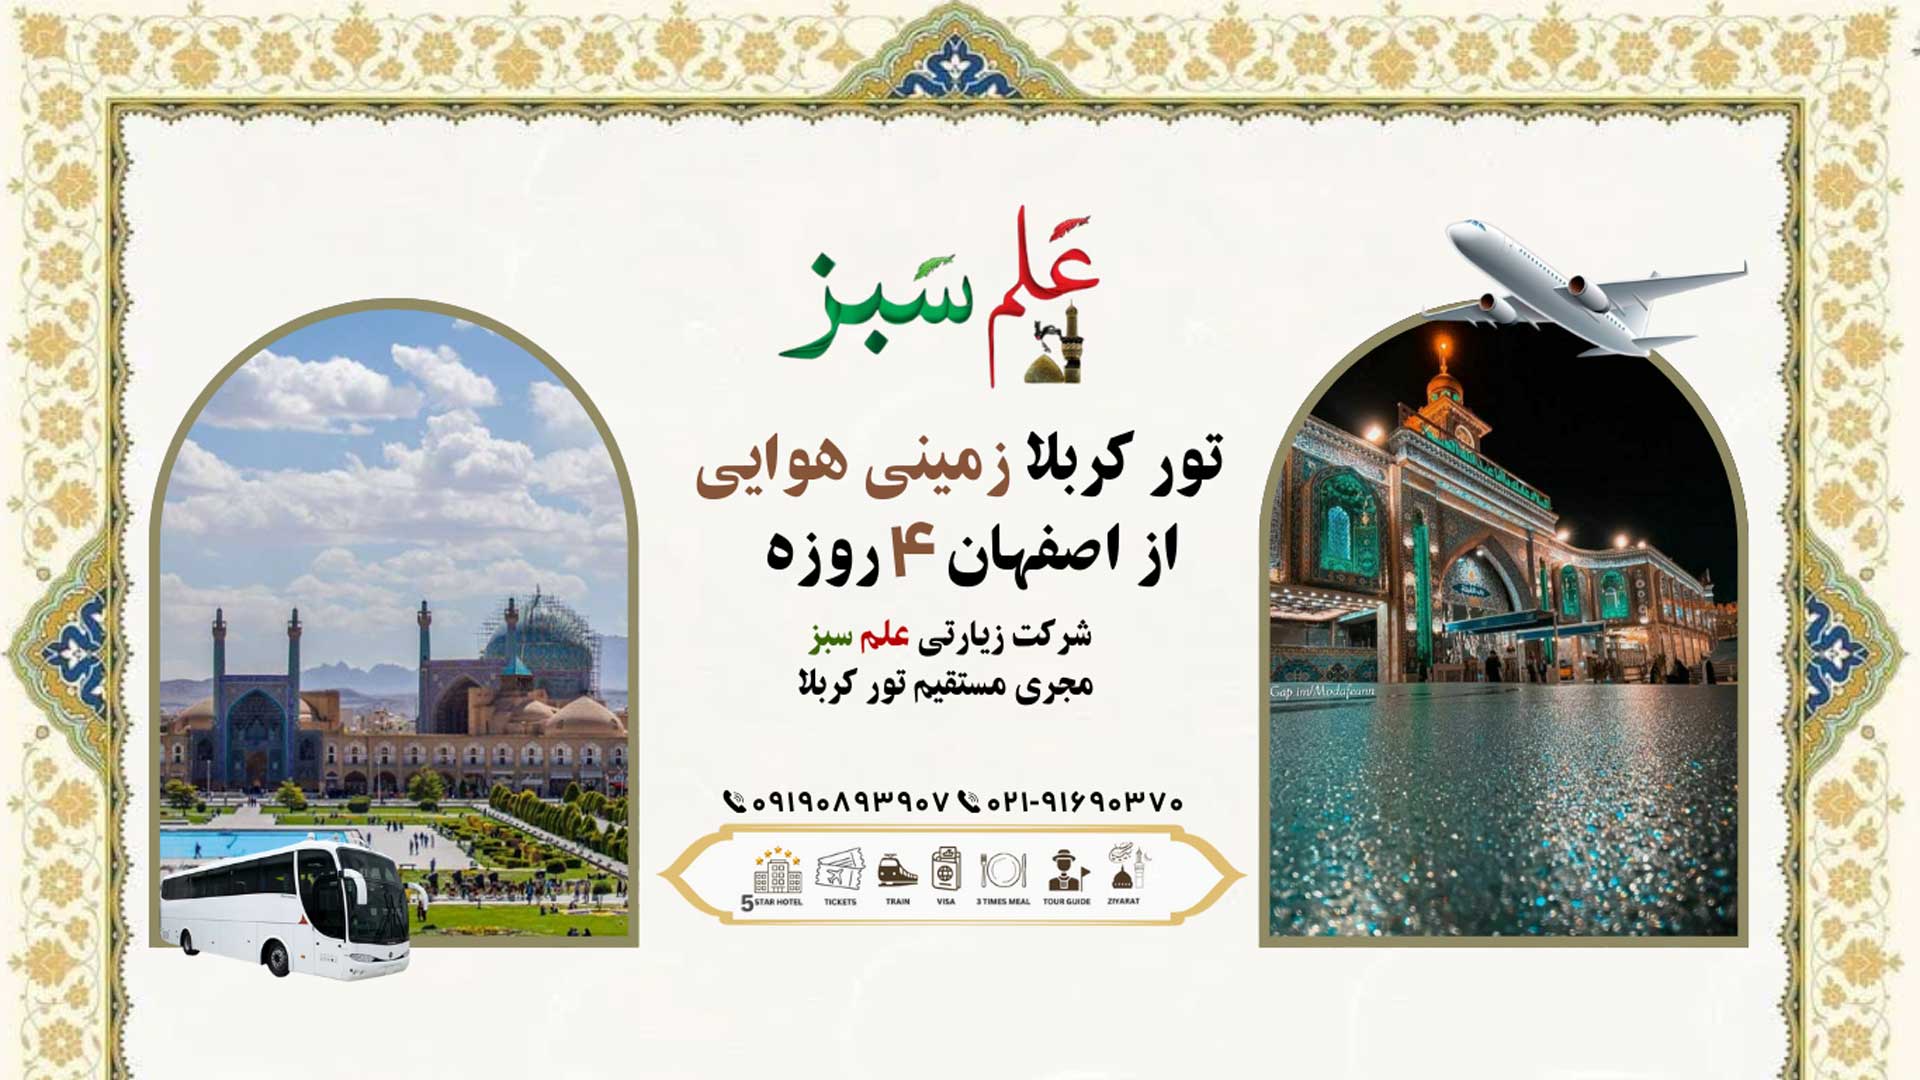 تور کربلا زمینی هوایی از اصفهان 4 روزه